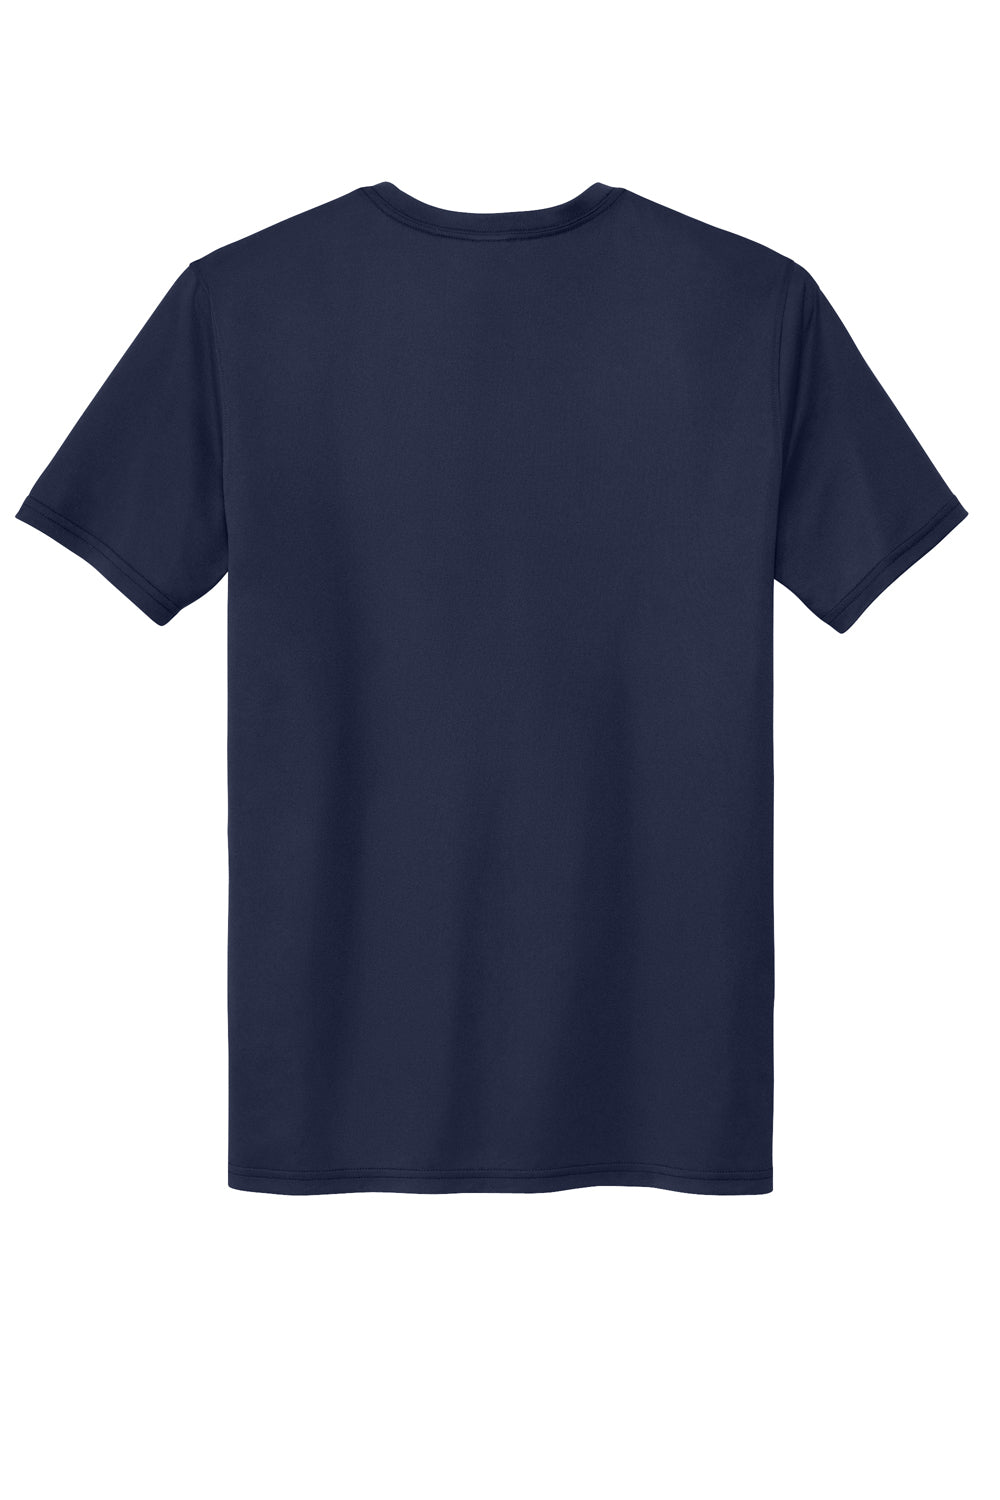 Sport-Tek ST760 Echo Short Sleeve Crewneck T-Shirt True Navy Blue Flat Back